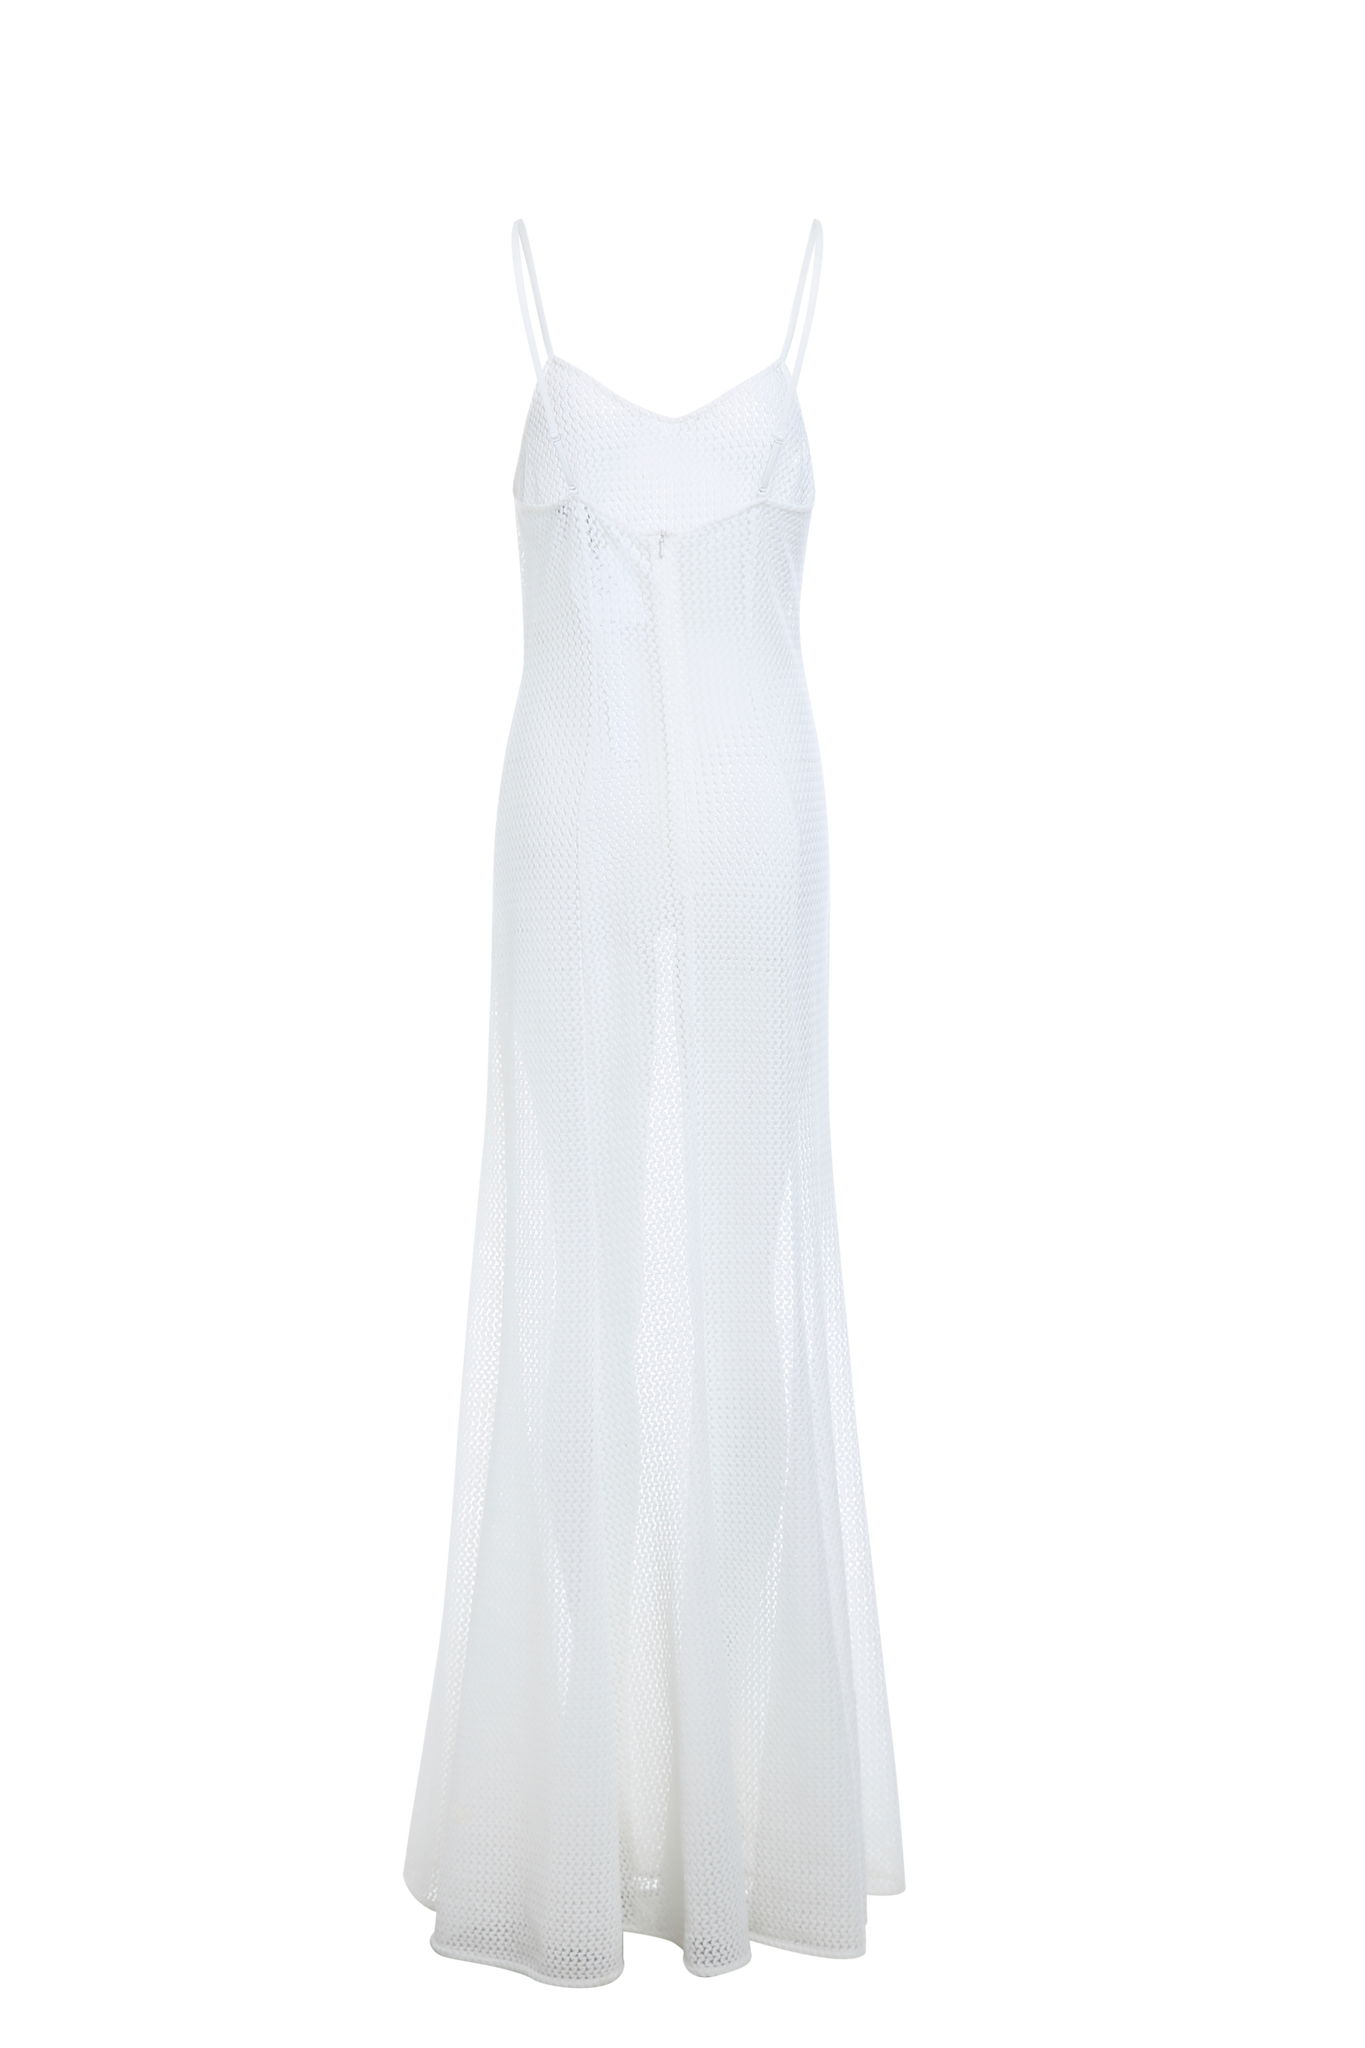 Gardenia White Hollow Out Halter Dress